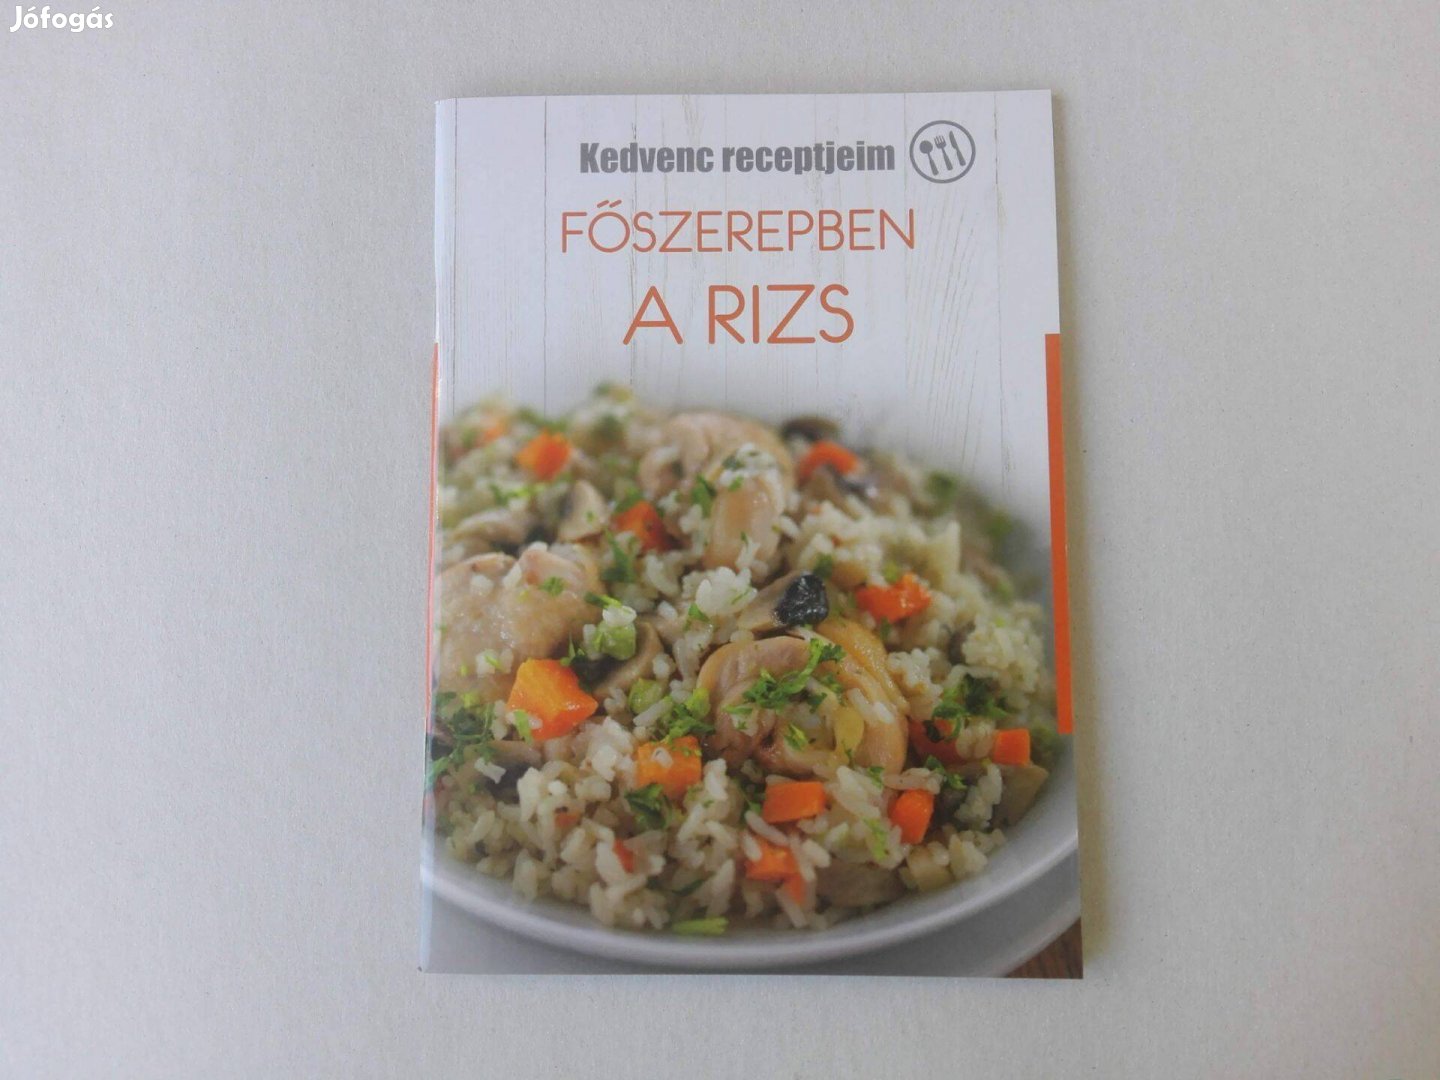 Kedvenc receptjeim - Főszerepben a rizs című Új könyv eladó!